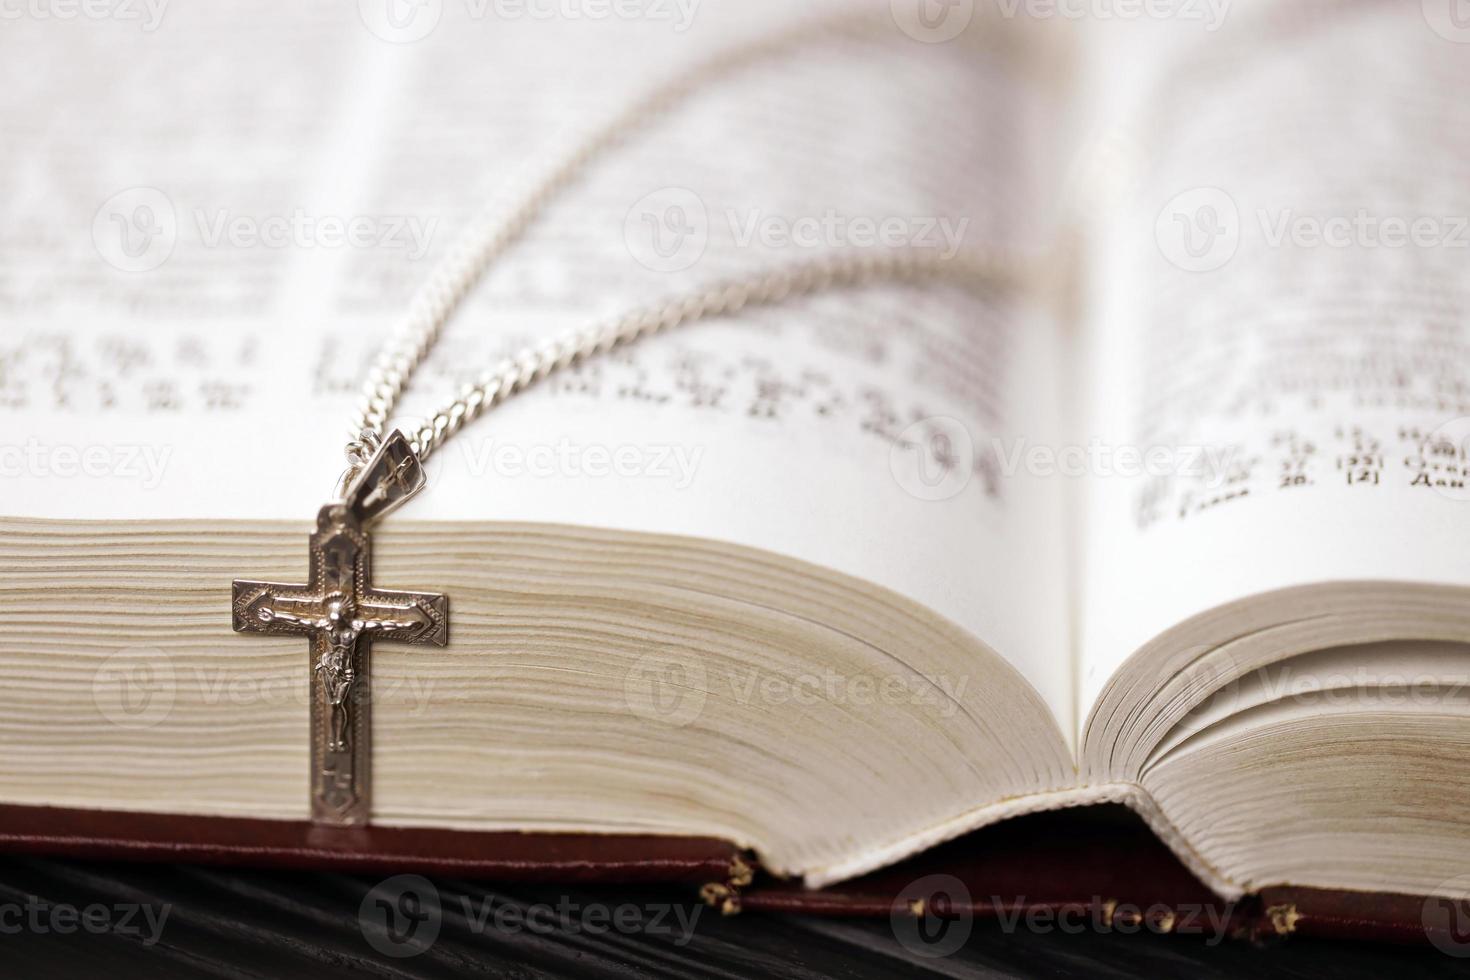 collier en argent avec croix crucifix sur le livre chrétien de la sainte bible sur une table en bois noire. demander des bénédictions à Dieu avec le pouvoir de la sainteté, ce qui porte chance photo